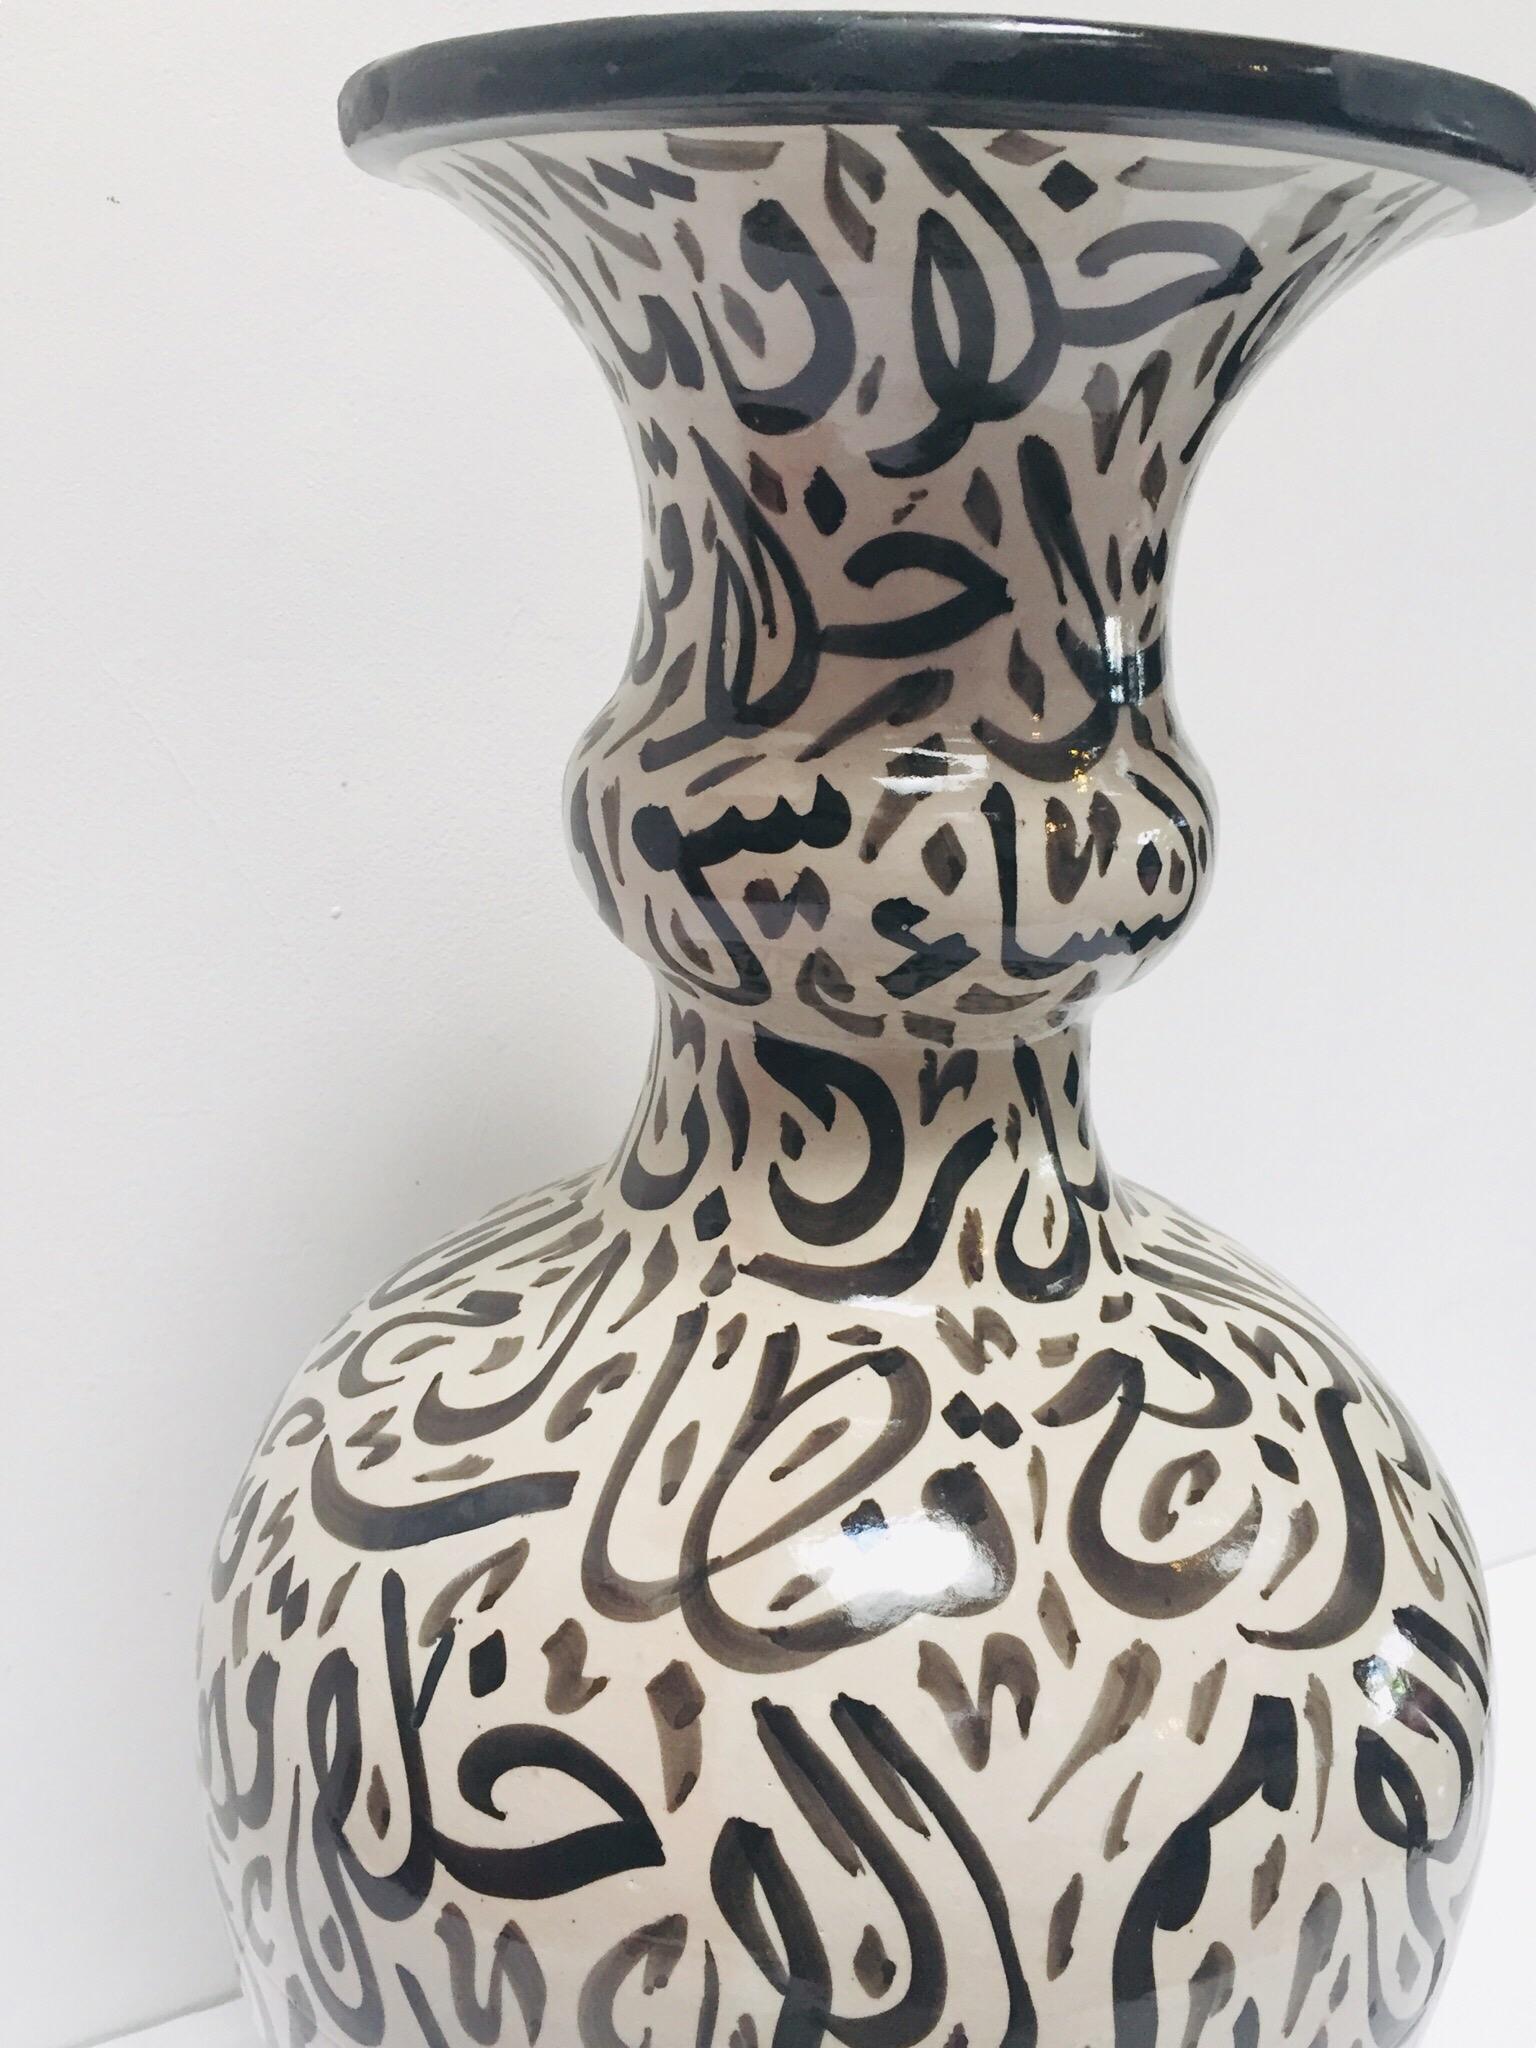 Large Moorish Glazed Ceramic Vase with Arabic Calligraphy Black Writing Fez For Sale 1